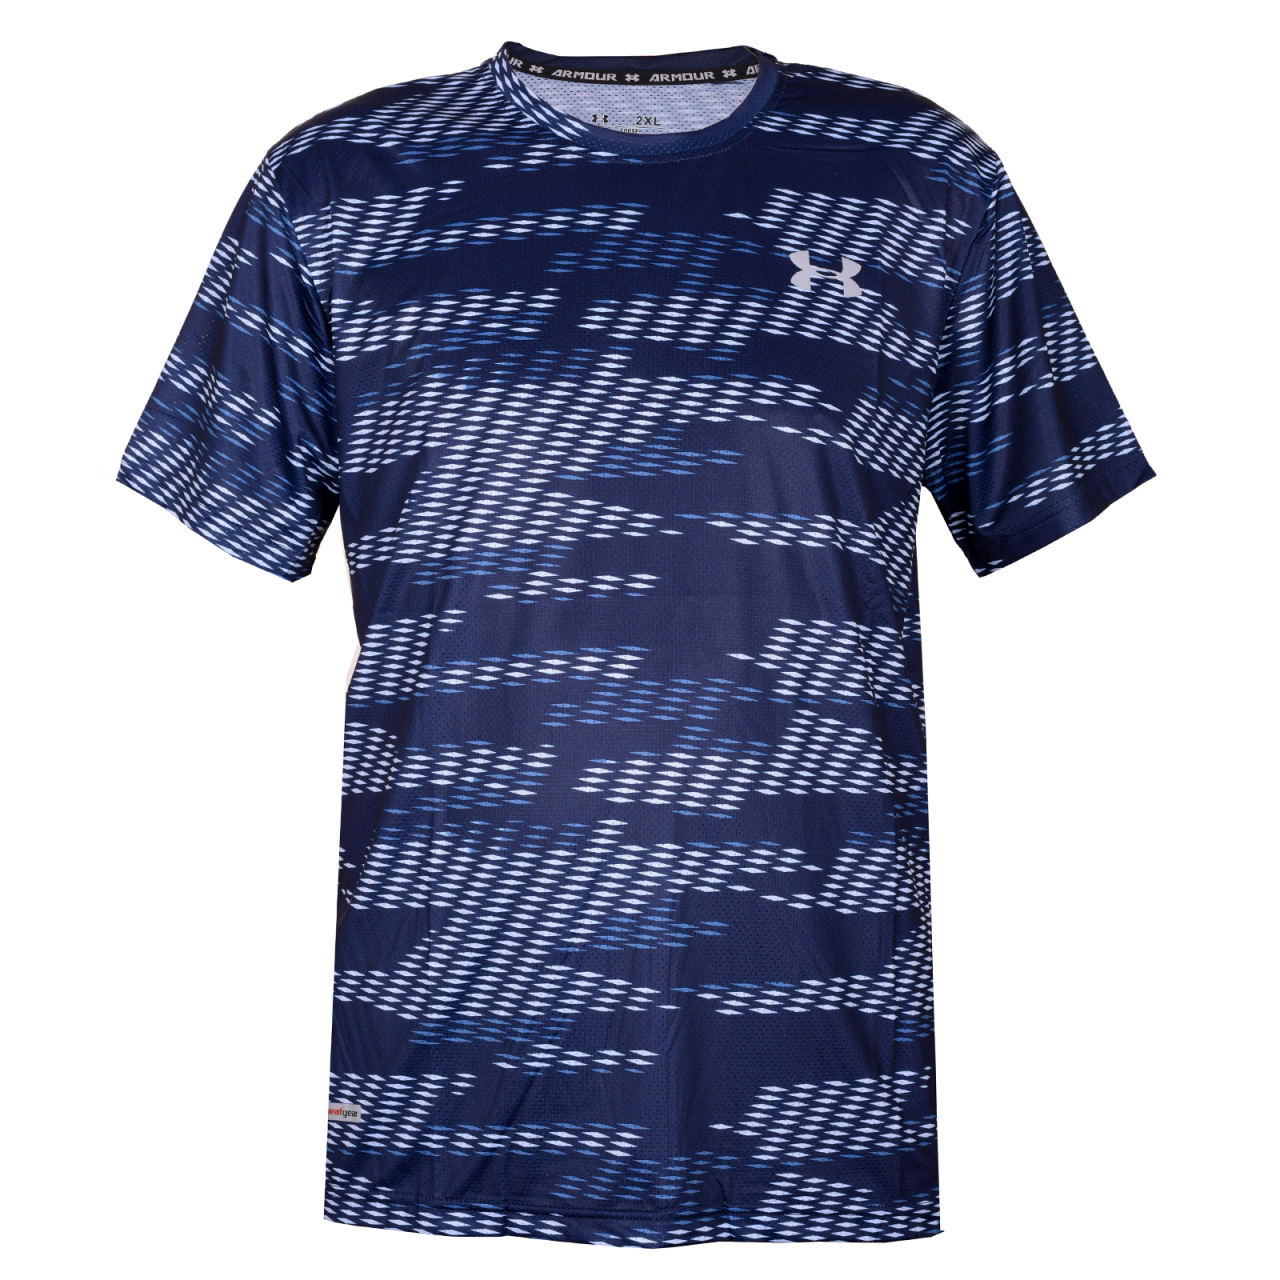 تیشرت و پولوشرت ورزشی مردانه آندر آرمور-Under Armour تی شرت ورزشی مردانه مدل heat gear کد SL-77373 - سرمه ای سفید آبی